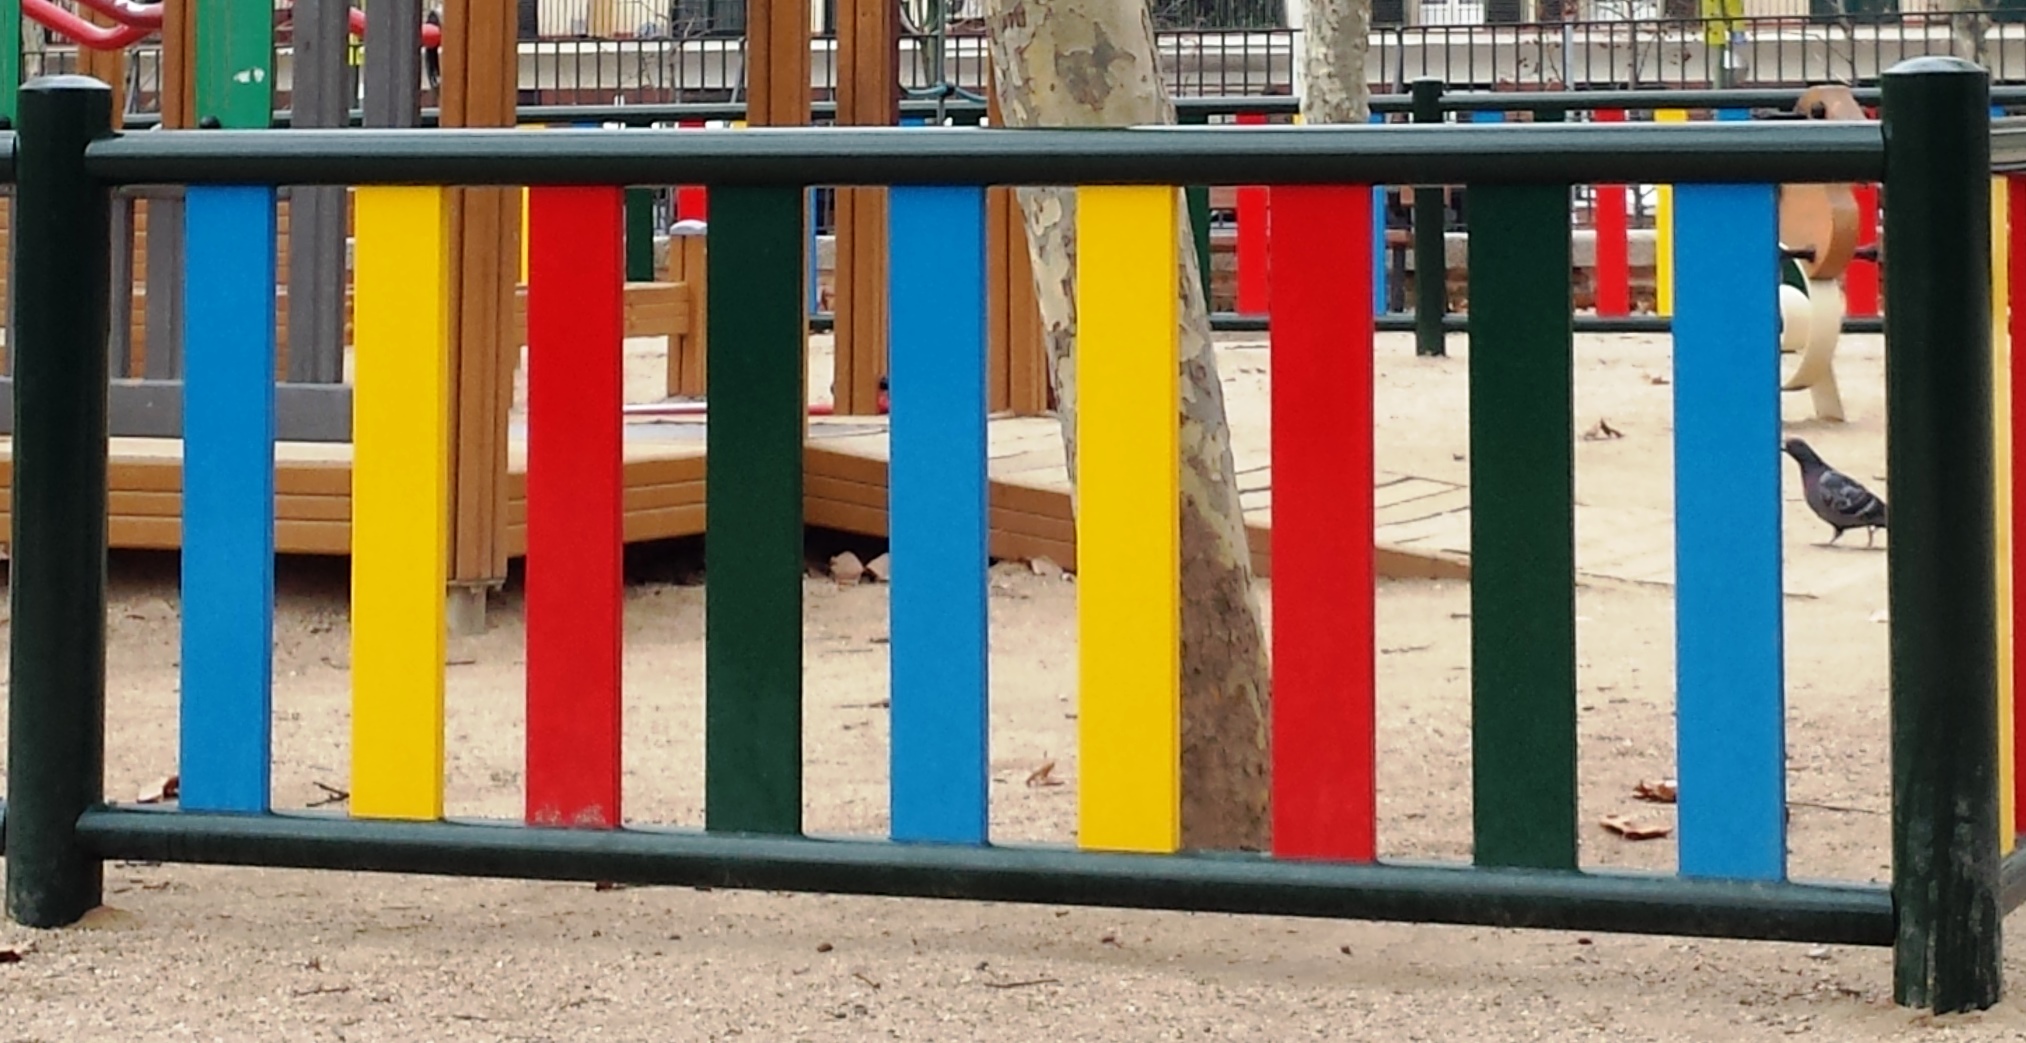 Valla infantil de plástico Multicolor - Impara Equipamientos